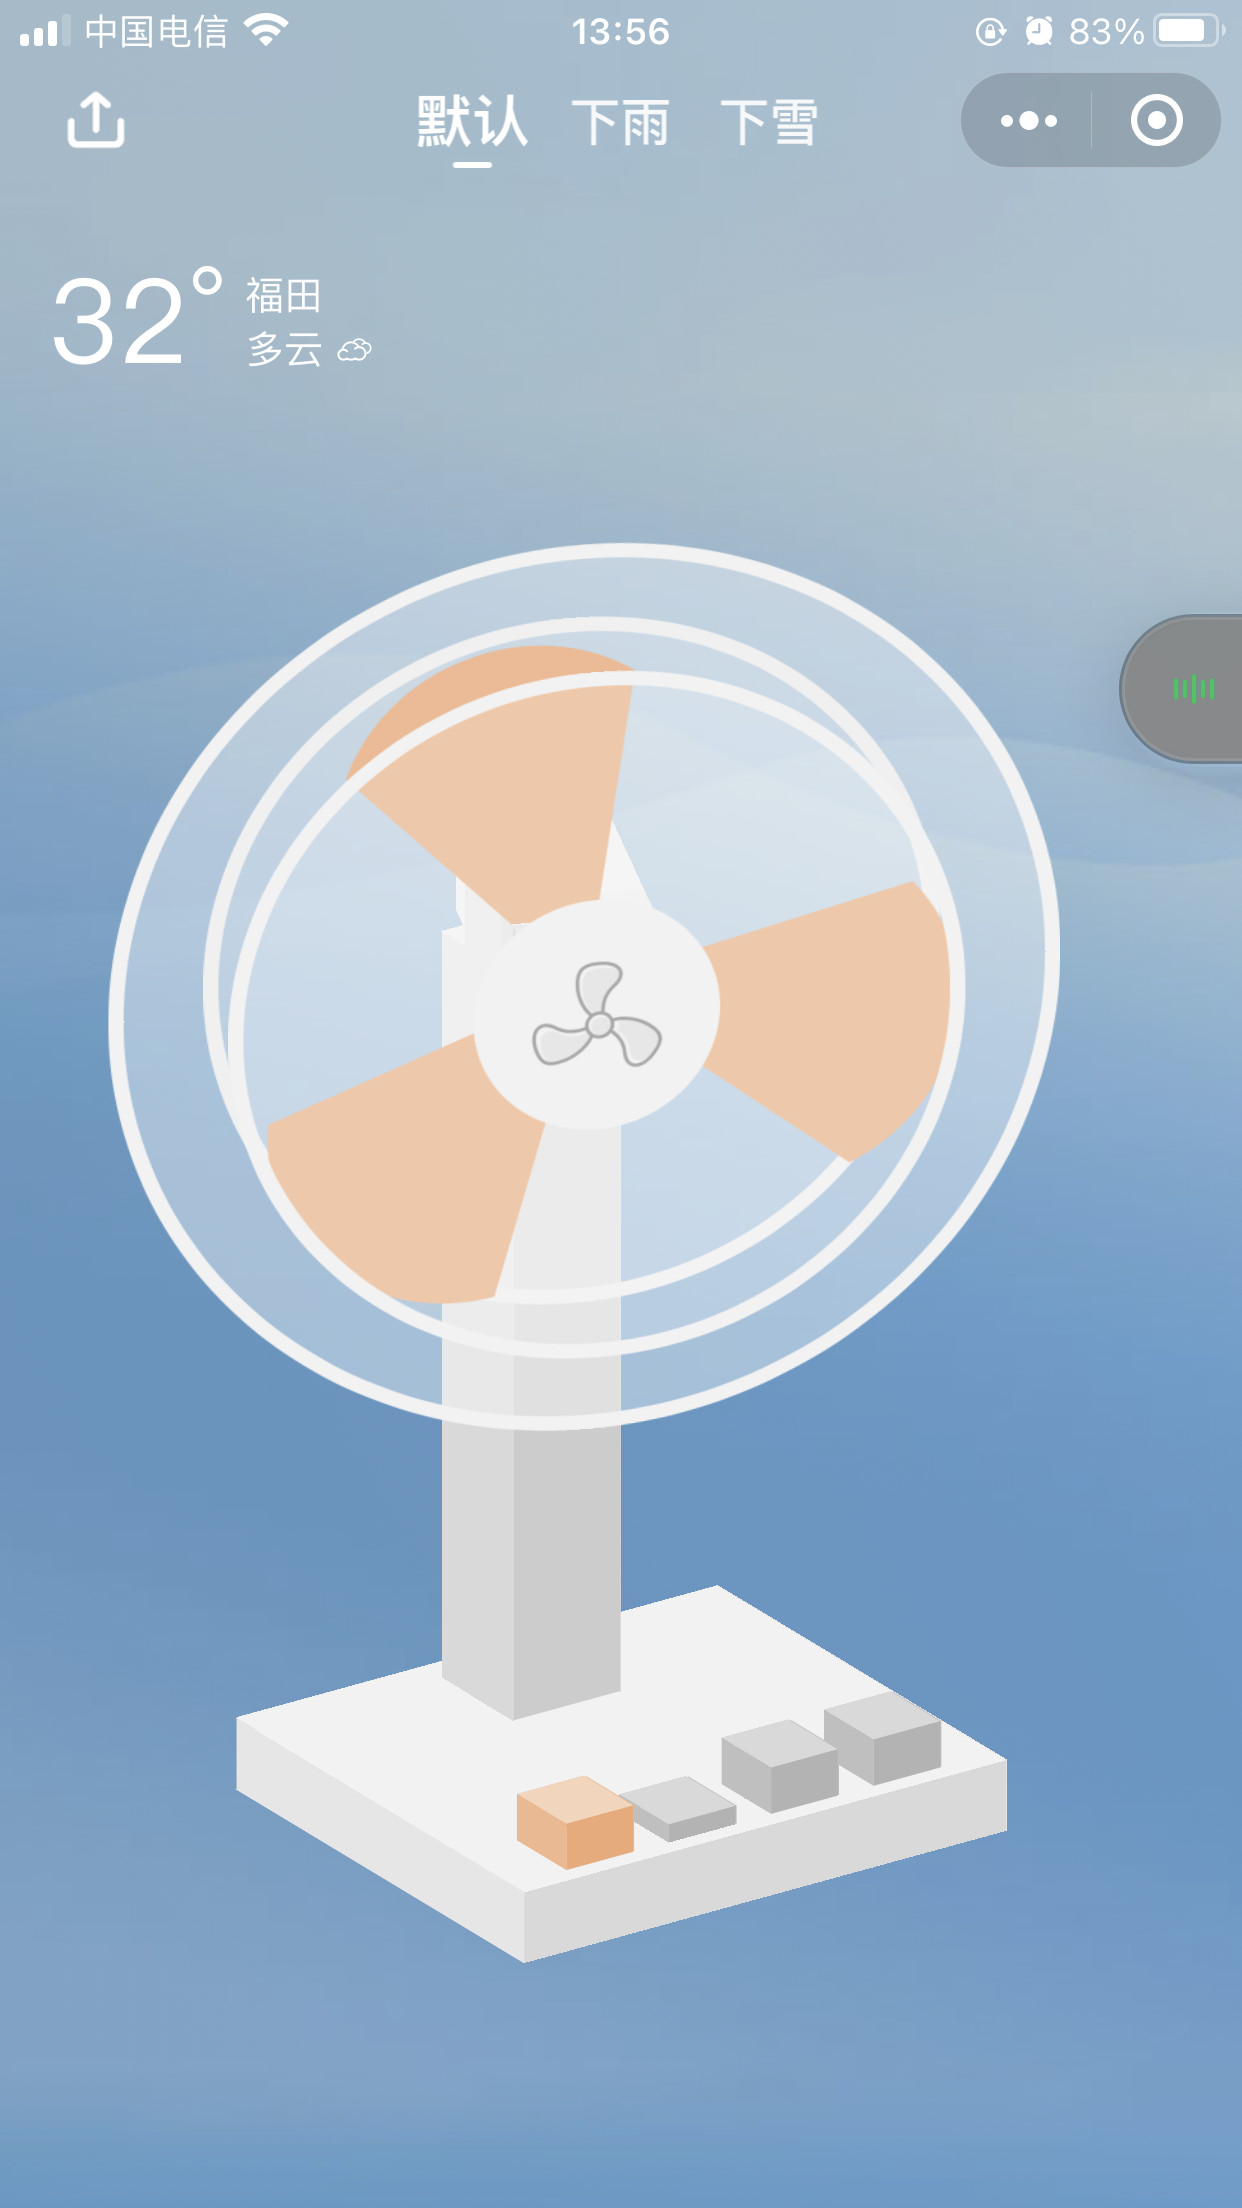 风扇模拟器_风扇模拟器小程序_风扇模拟器微信小程序